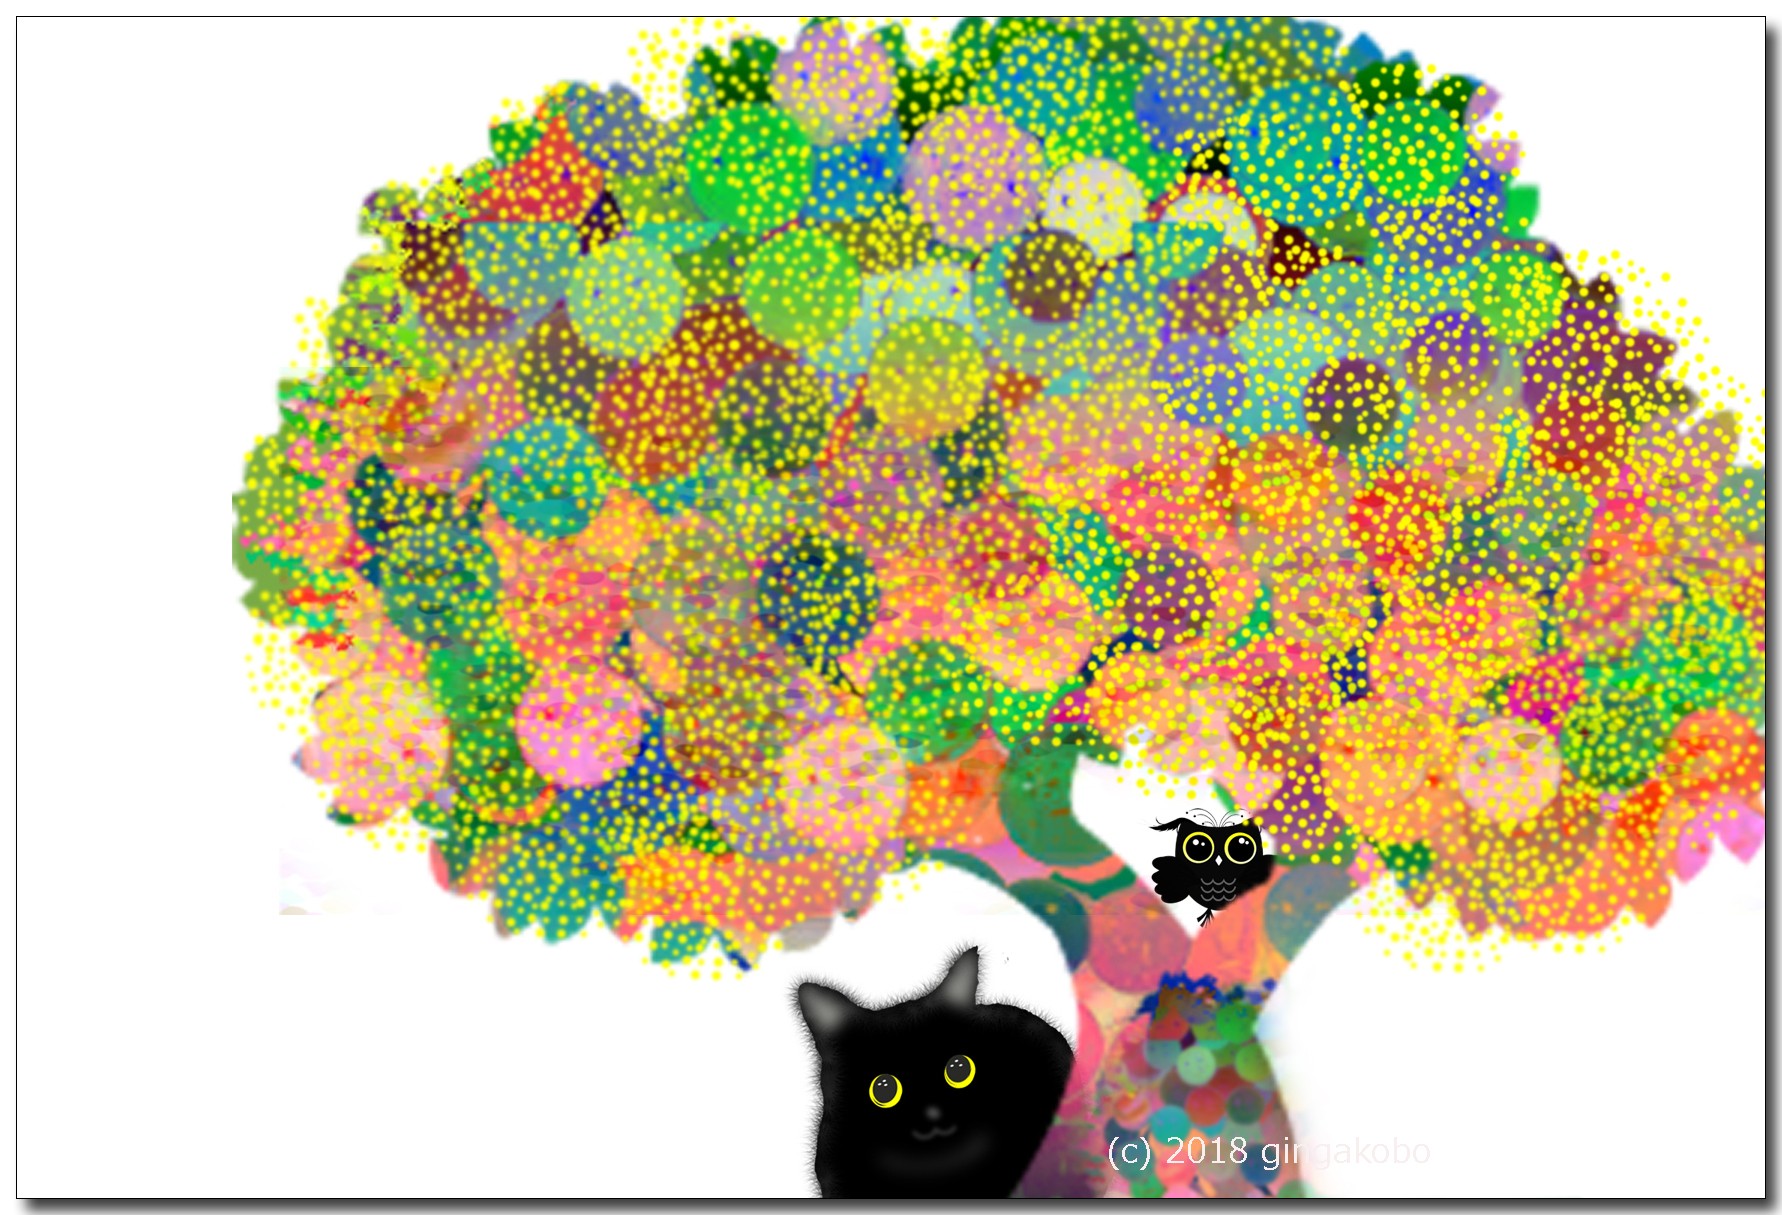 黒猫ちゃんとフクロウくんの関係 ほっこり癒しのイラストポストカード2枚組no 626 Iichi ハンドメイド クラフト作品 手仕事品の通販